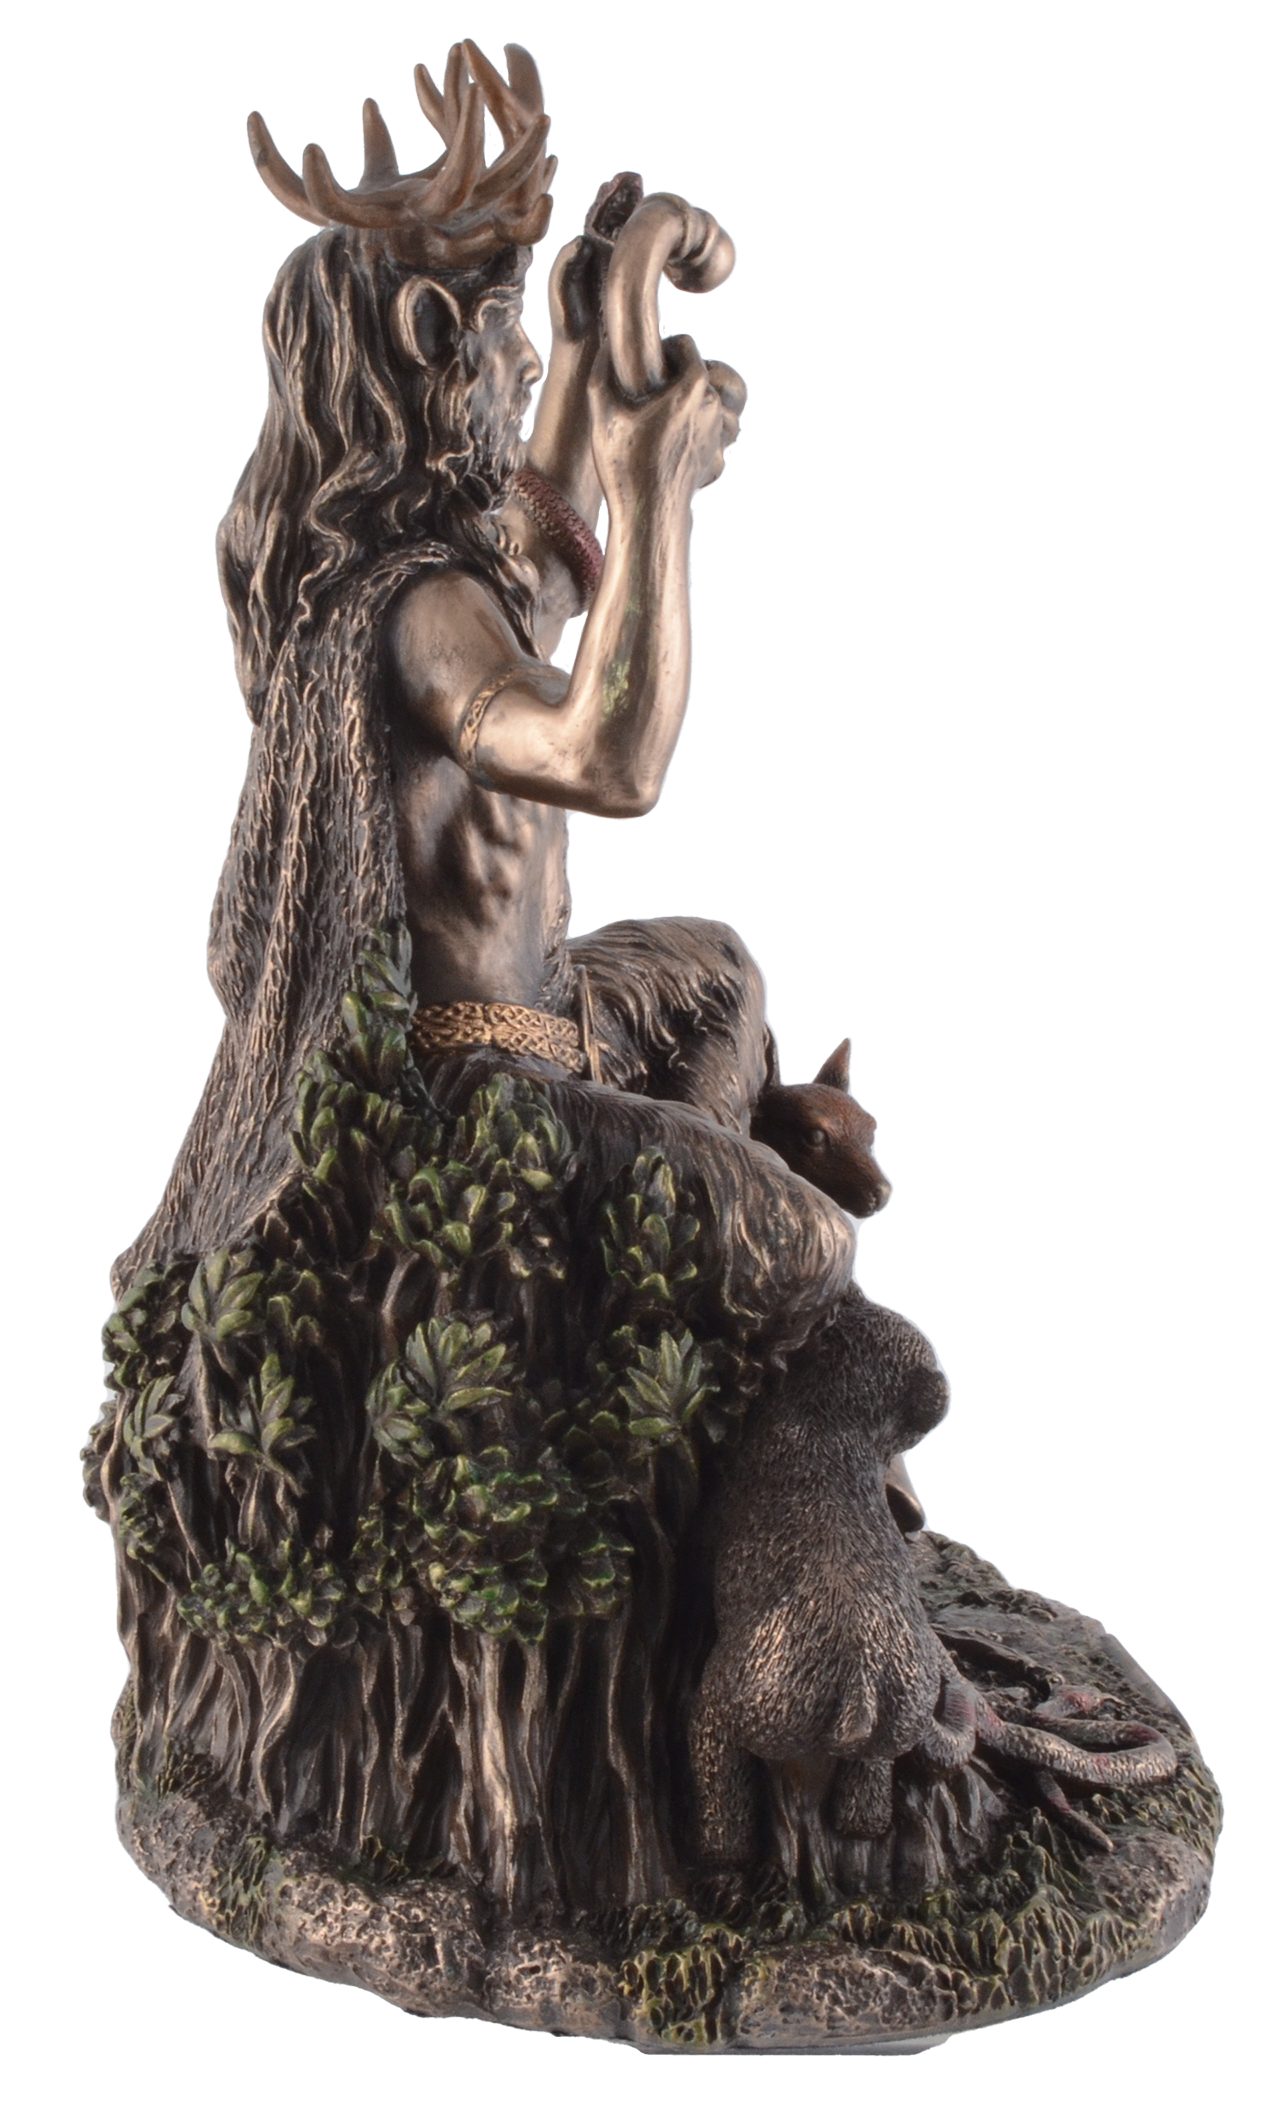 Dekofigur Veronese, Cernunnos Gott von Hand kelt. by bronziert ca. Gmbh LxBxH direct bronziert, Vogler Natur 19x15x23cm der